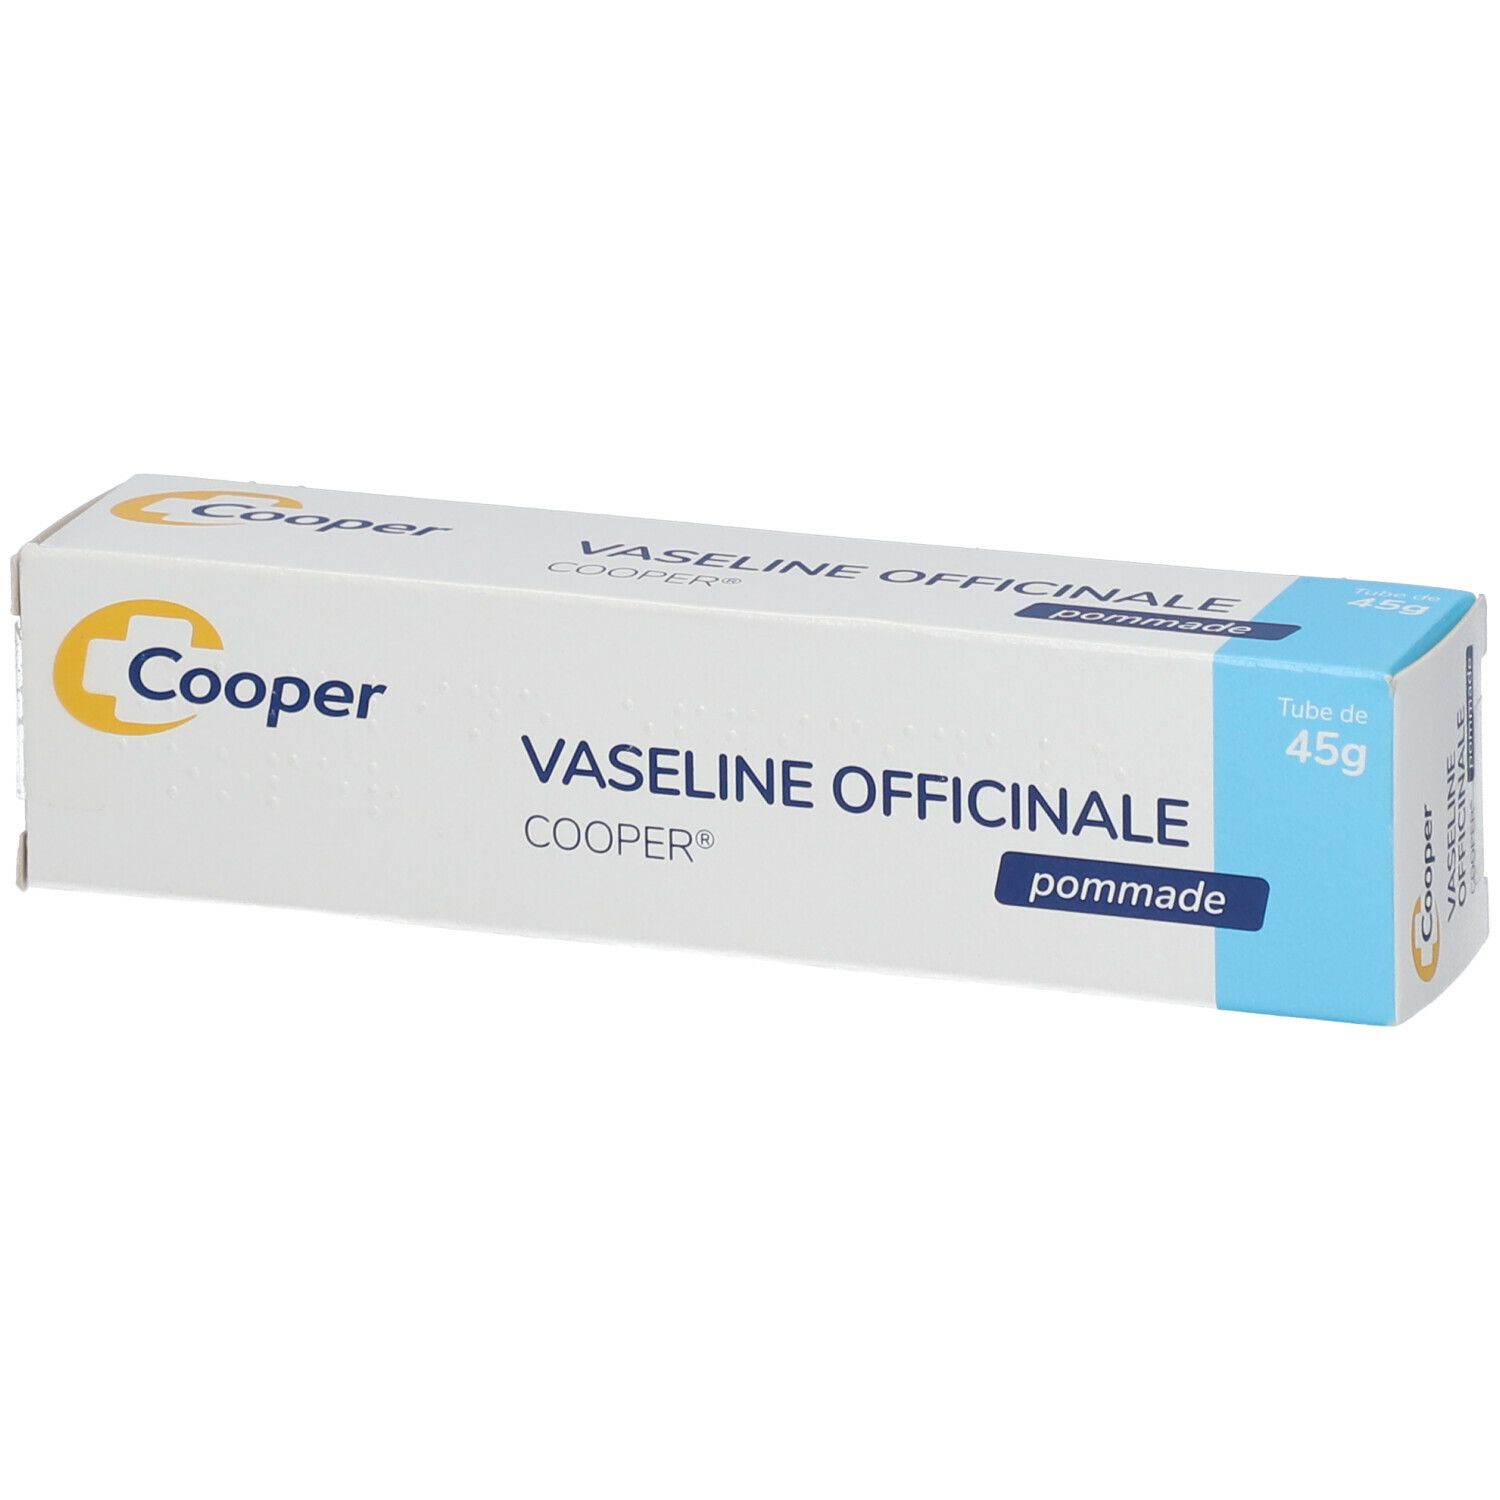 Cooper Vaseline Officinale